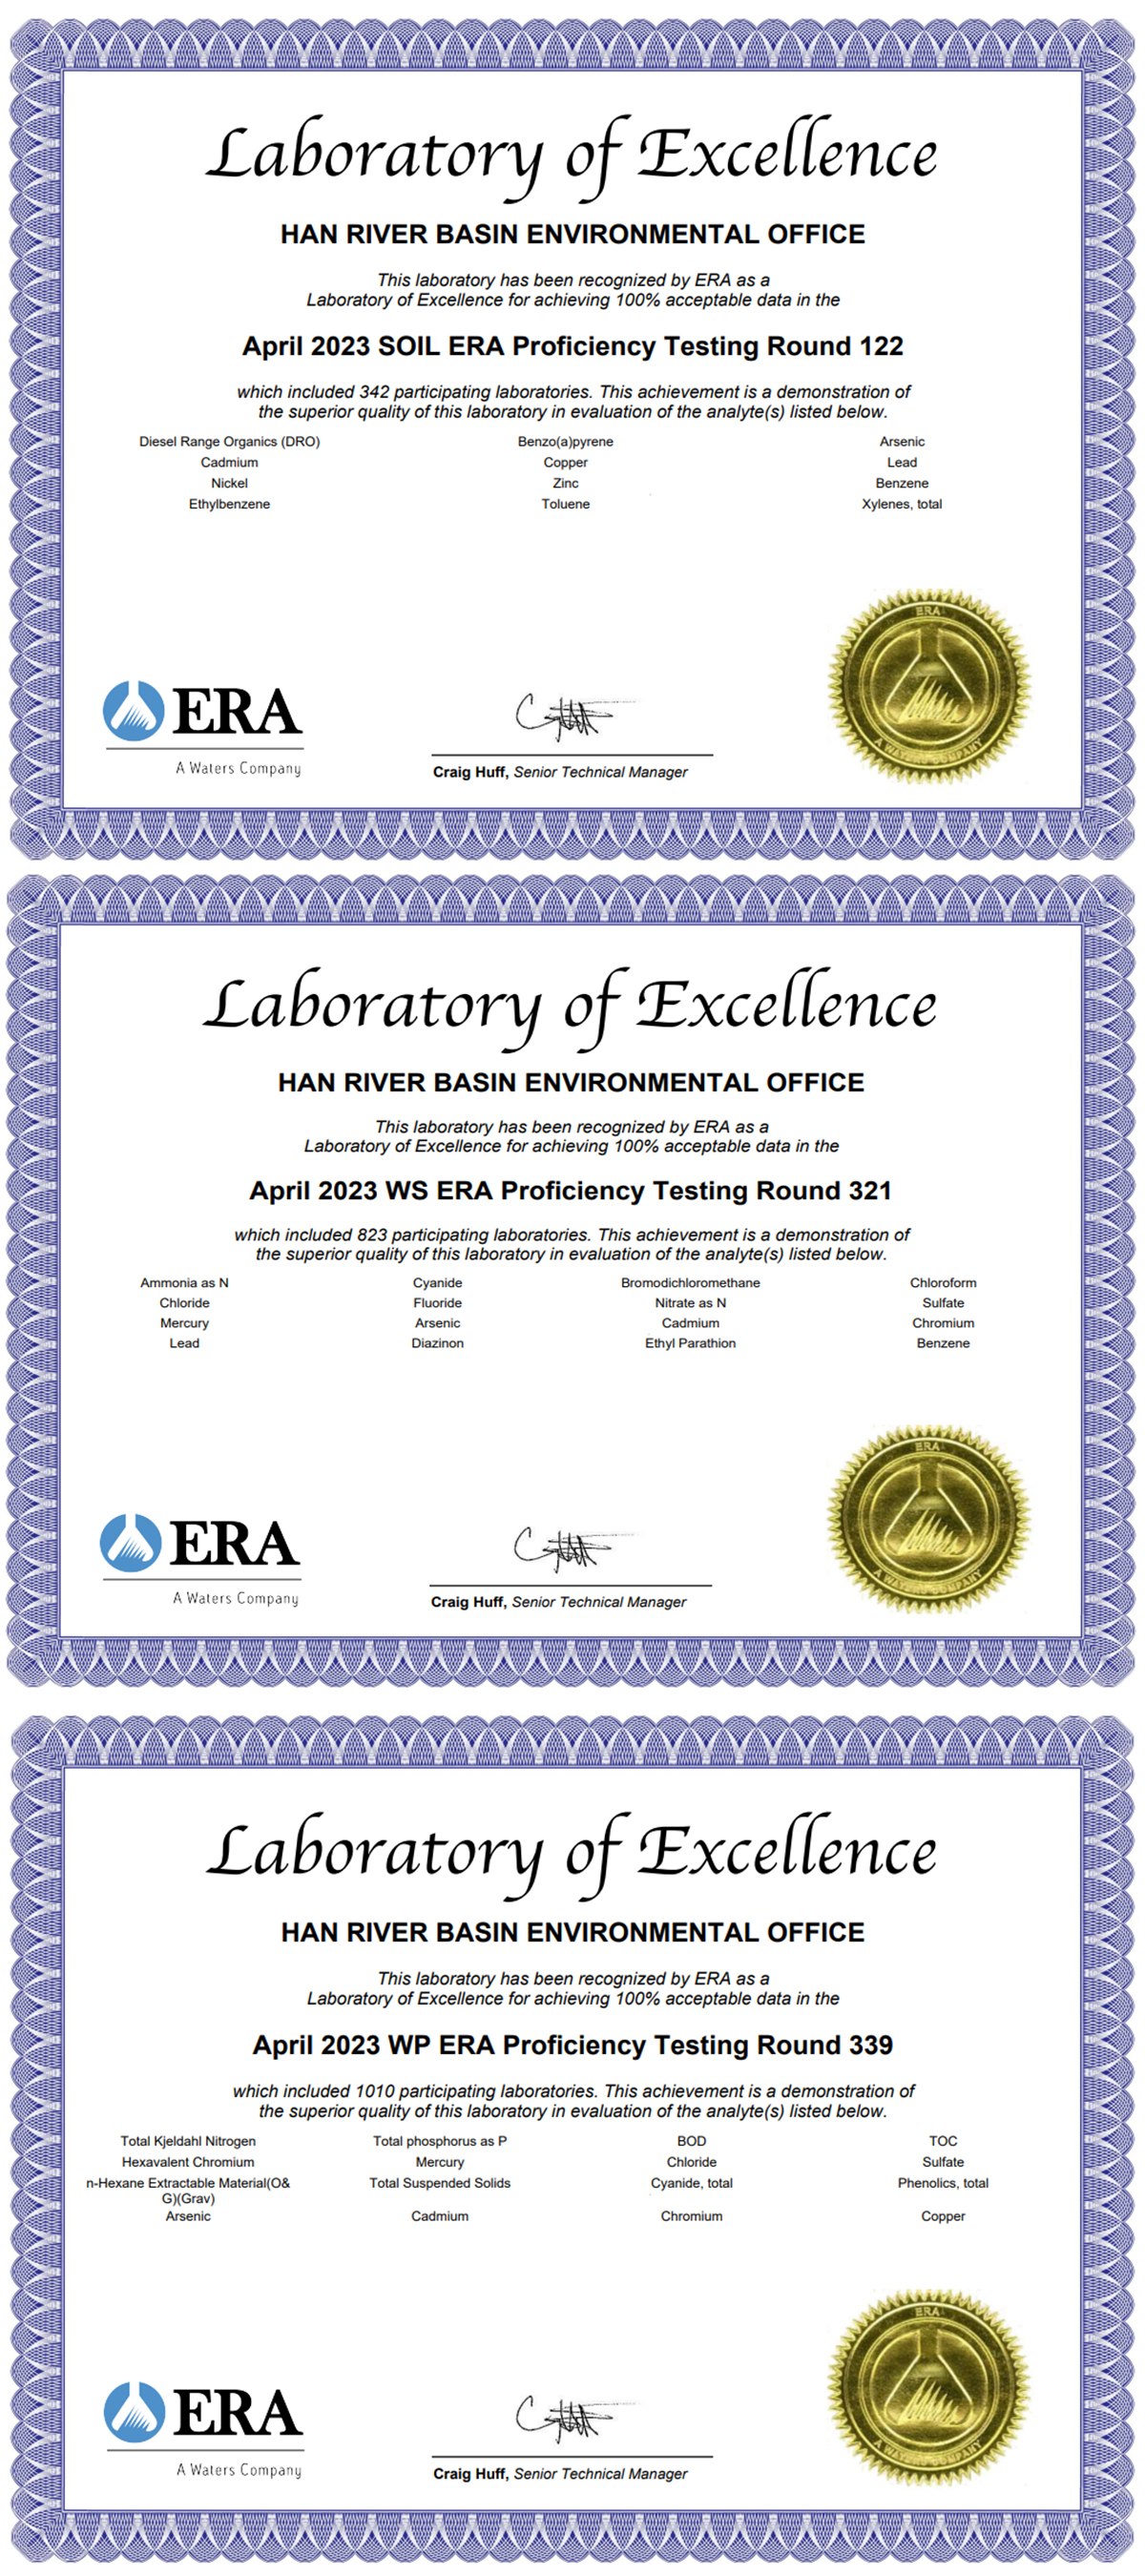 한강유역환경청이 미국 환경자원협회에서 인증받은 국제 숙련도 인증서(위쪽부터 토양, 먹는물, 수질분야)